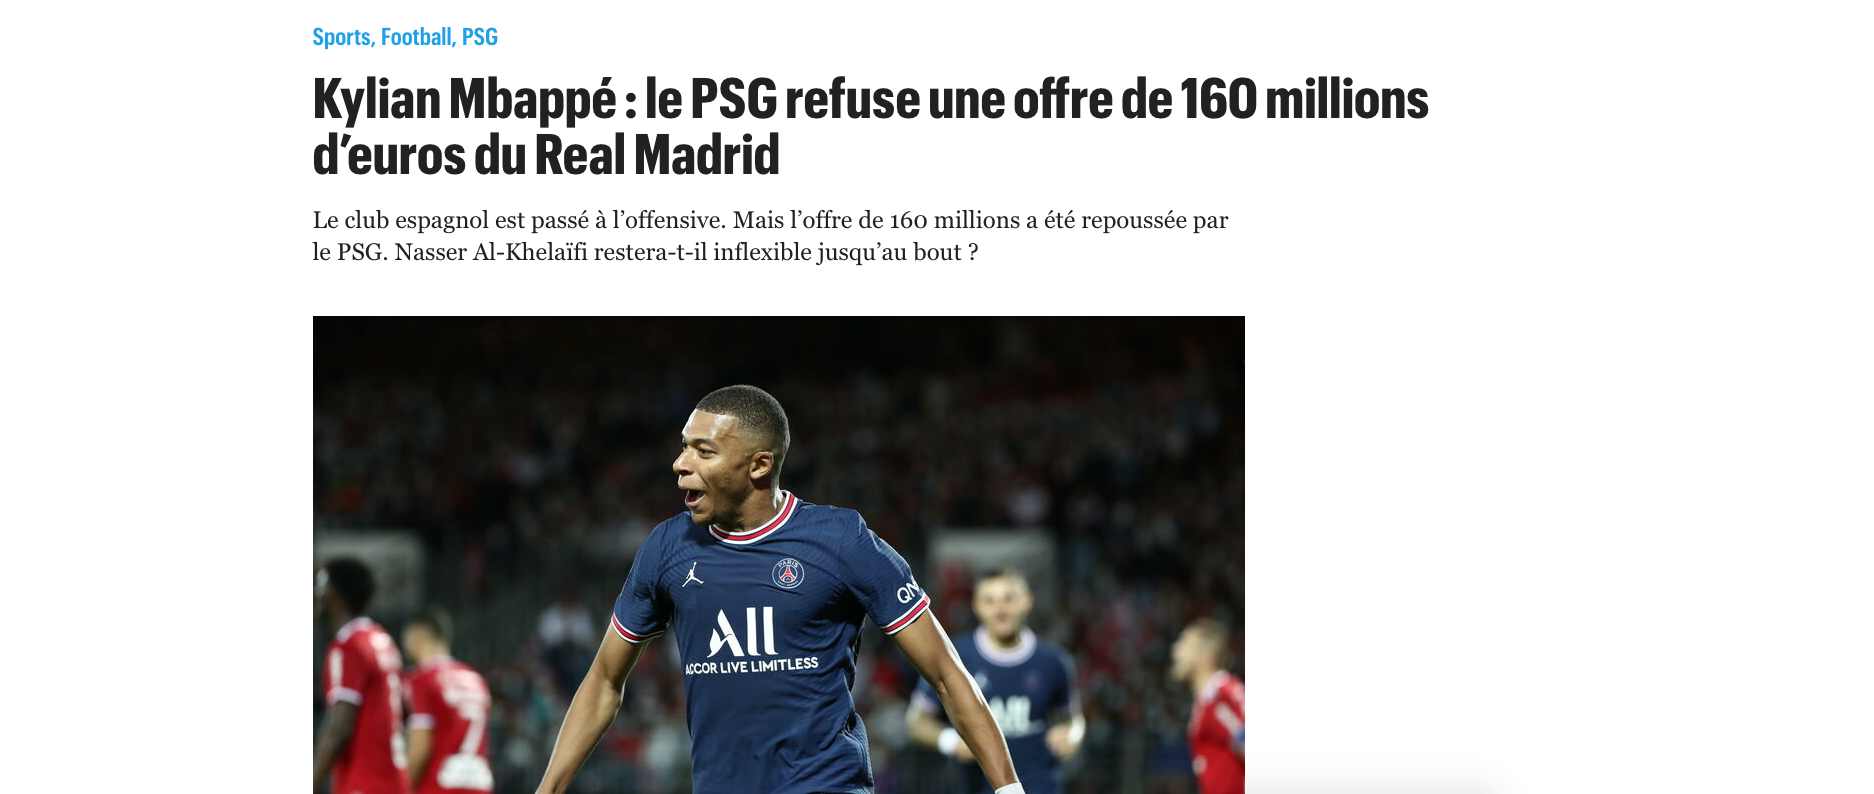 La oferta del Real Madrid al PSG por Mbappé y última hora del mercado de fichajes hoy, en directo